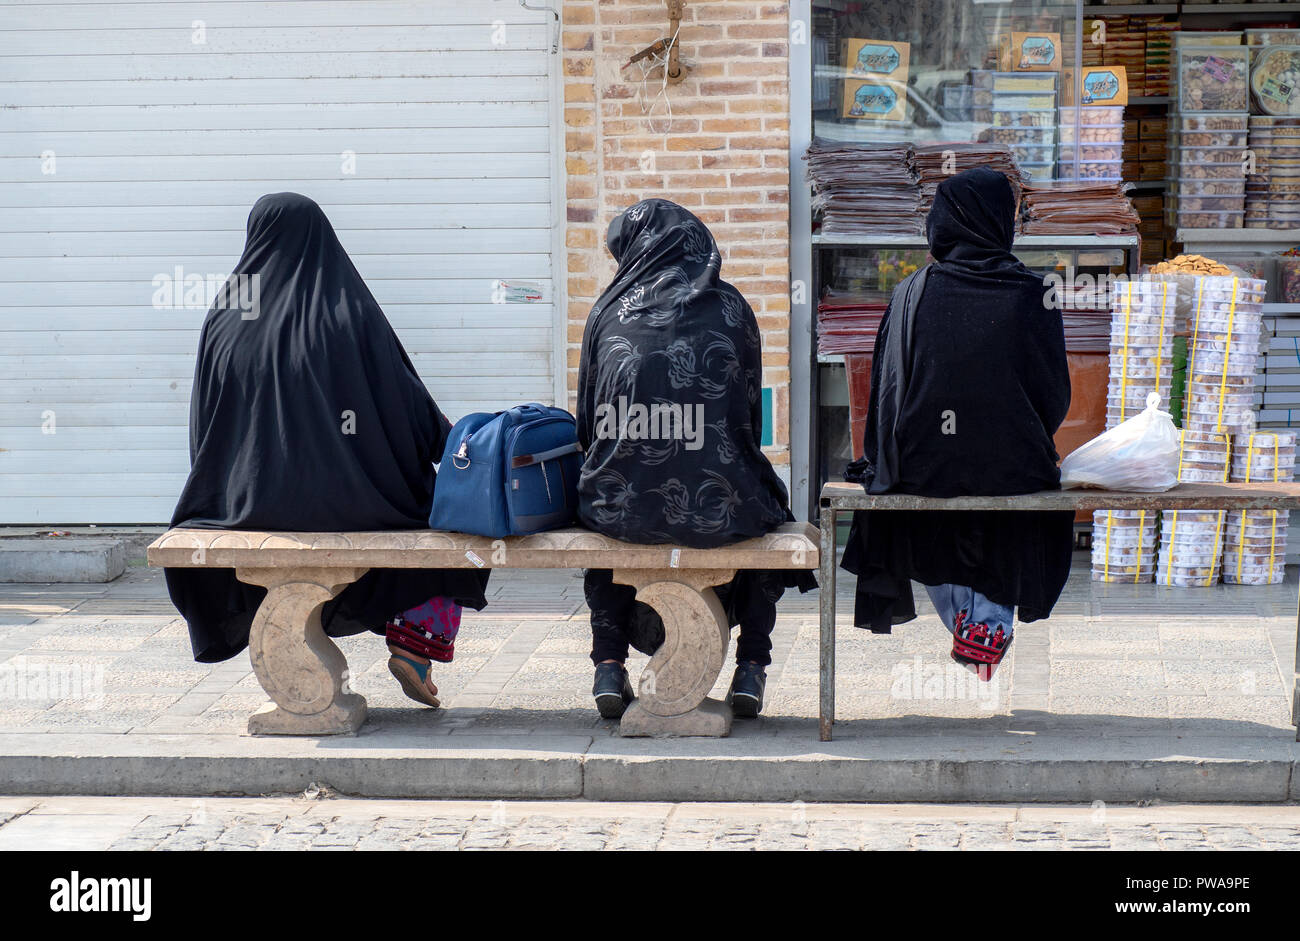 Yazd, Iran - Marzo 7, 2017 : Tre donne con islamica chador nero seduti sui banchi Foto Stock